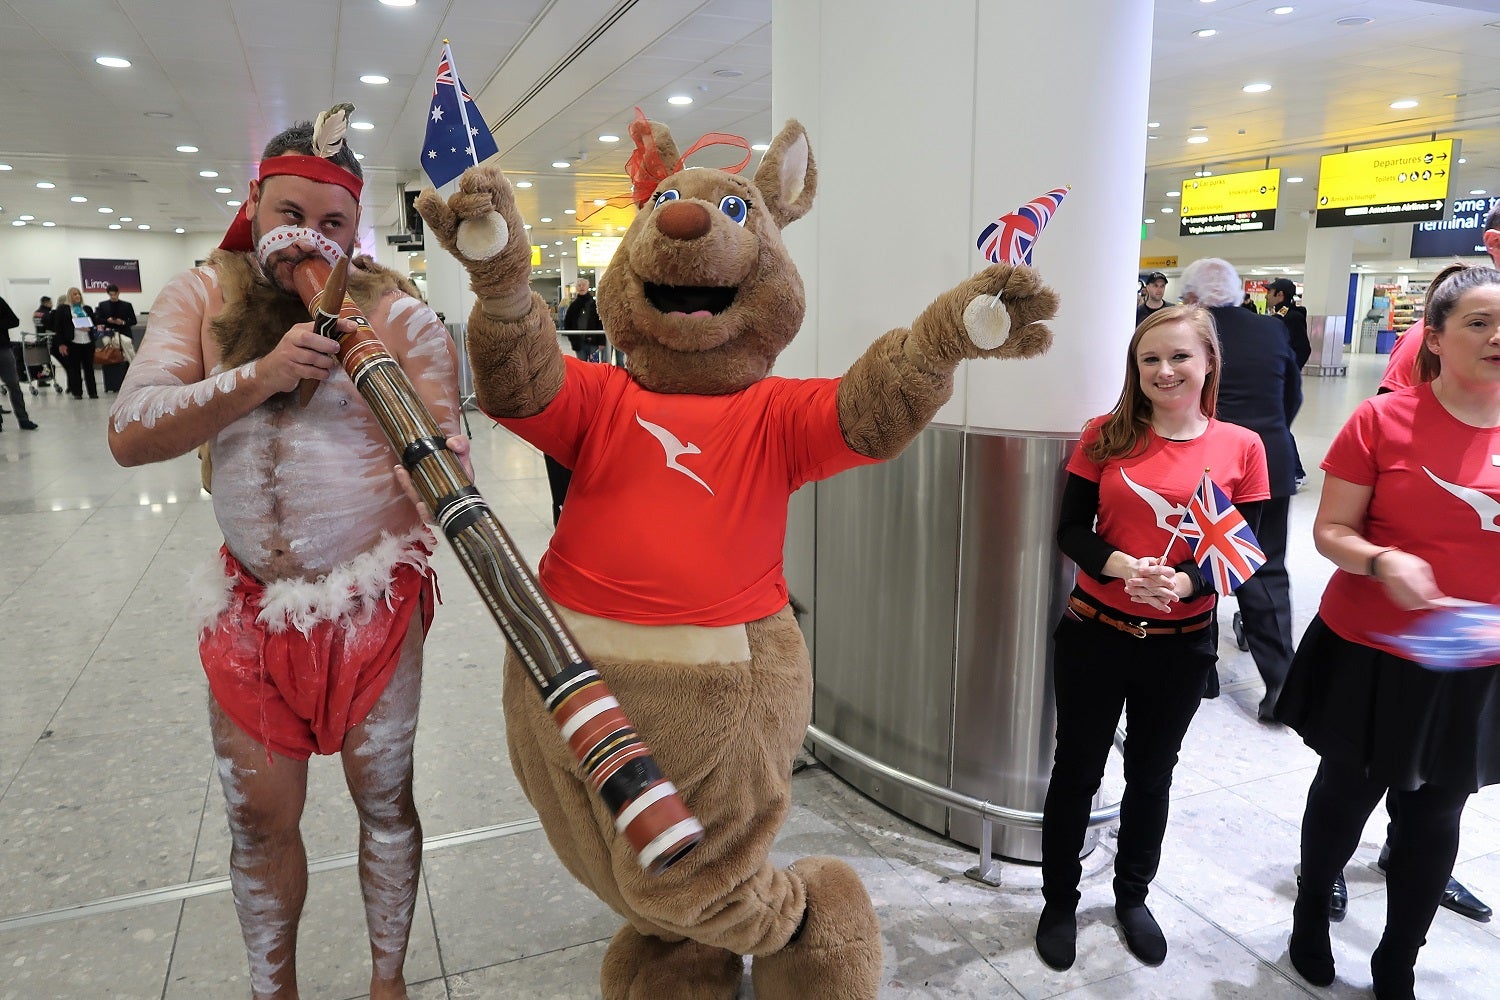 Qantas Perth-London inaugural welcome party LHR